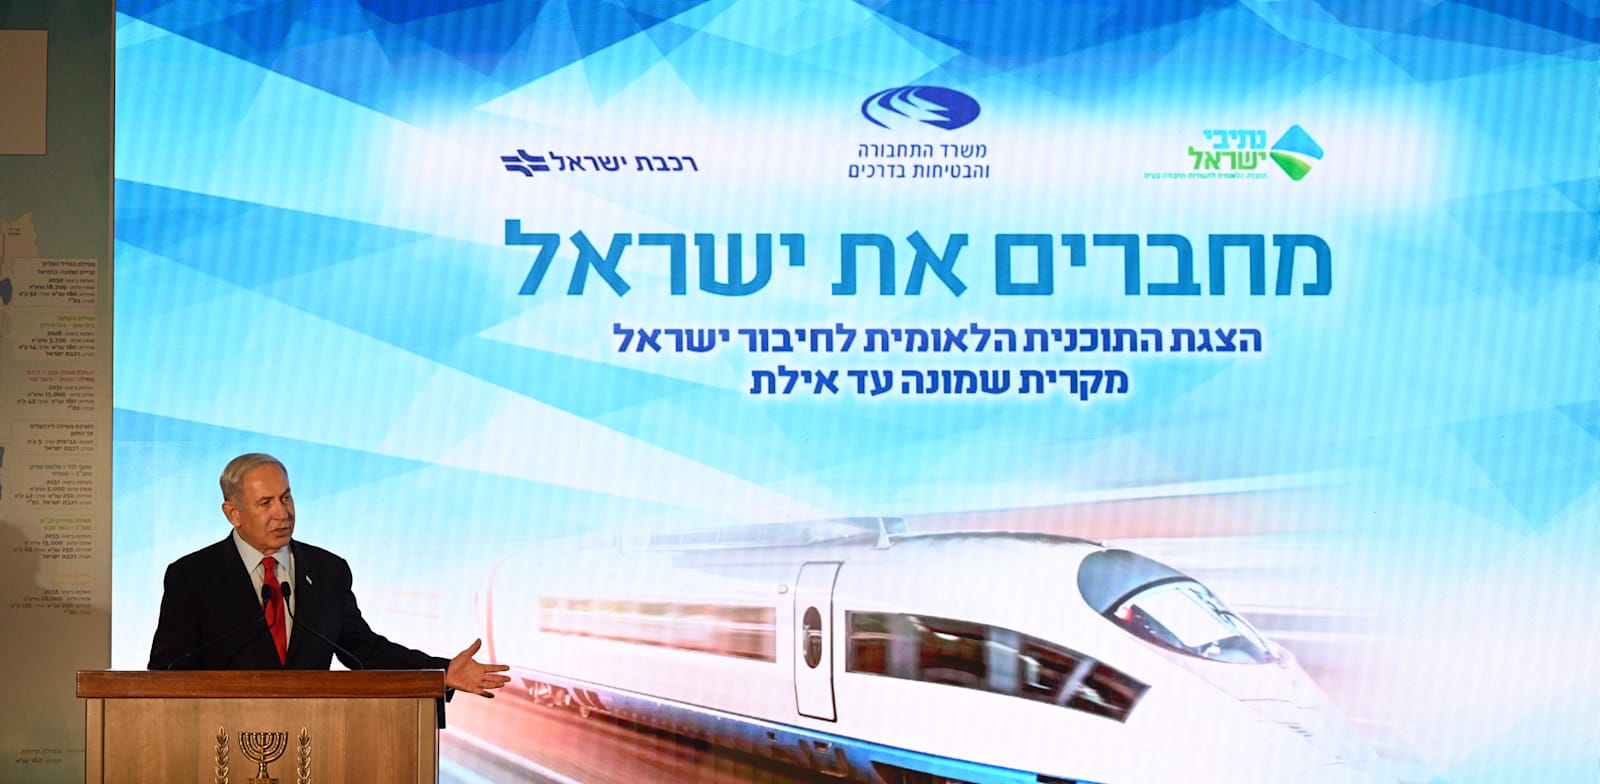 ראש הממשלה בנימין נתניהו במסע''ת להצגת תוכנית ''לחיבור ישראל ברשת מסילות'' / צילום: חיים צח-לע''מ